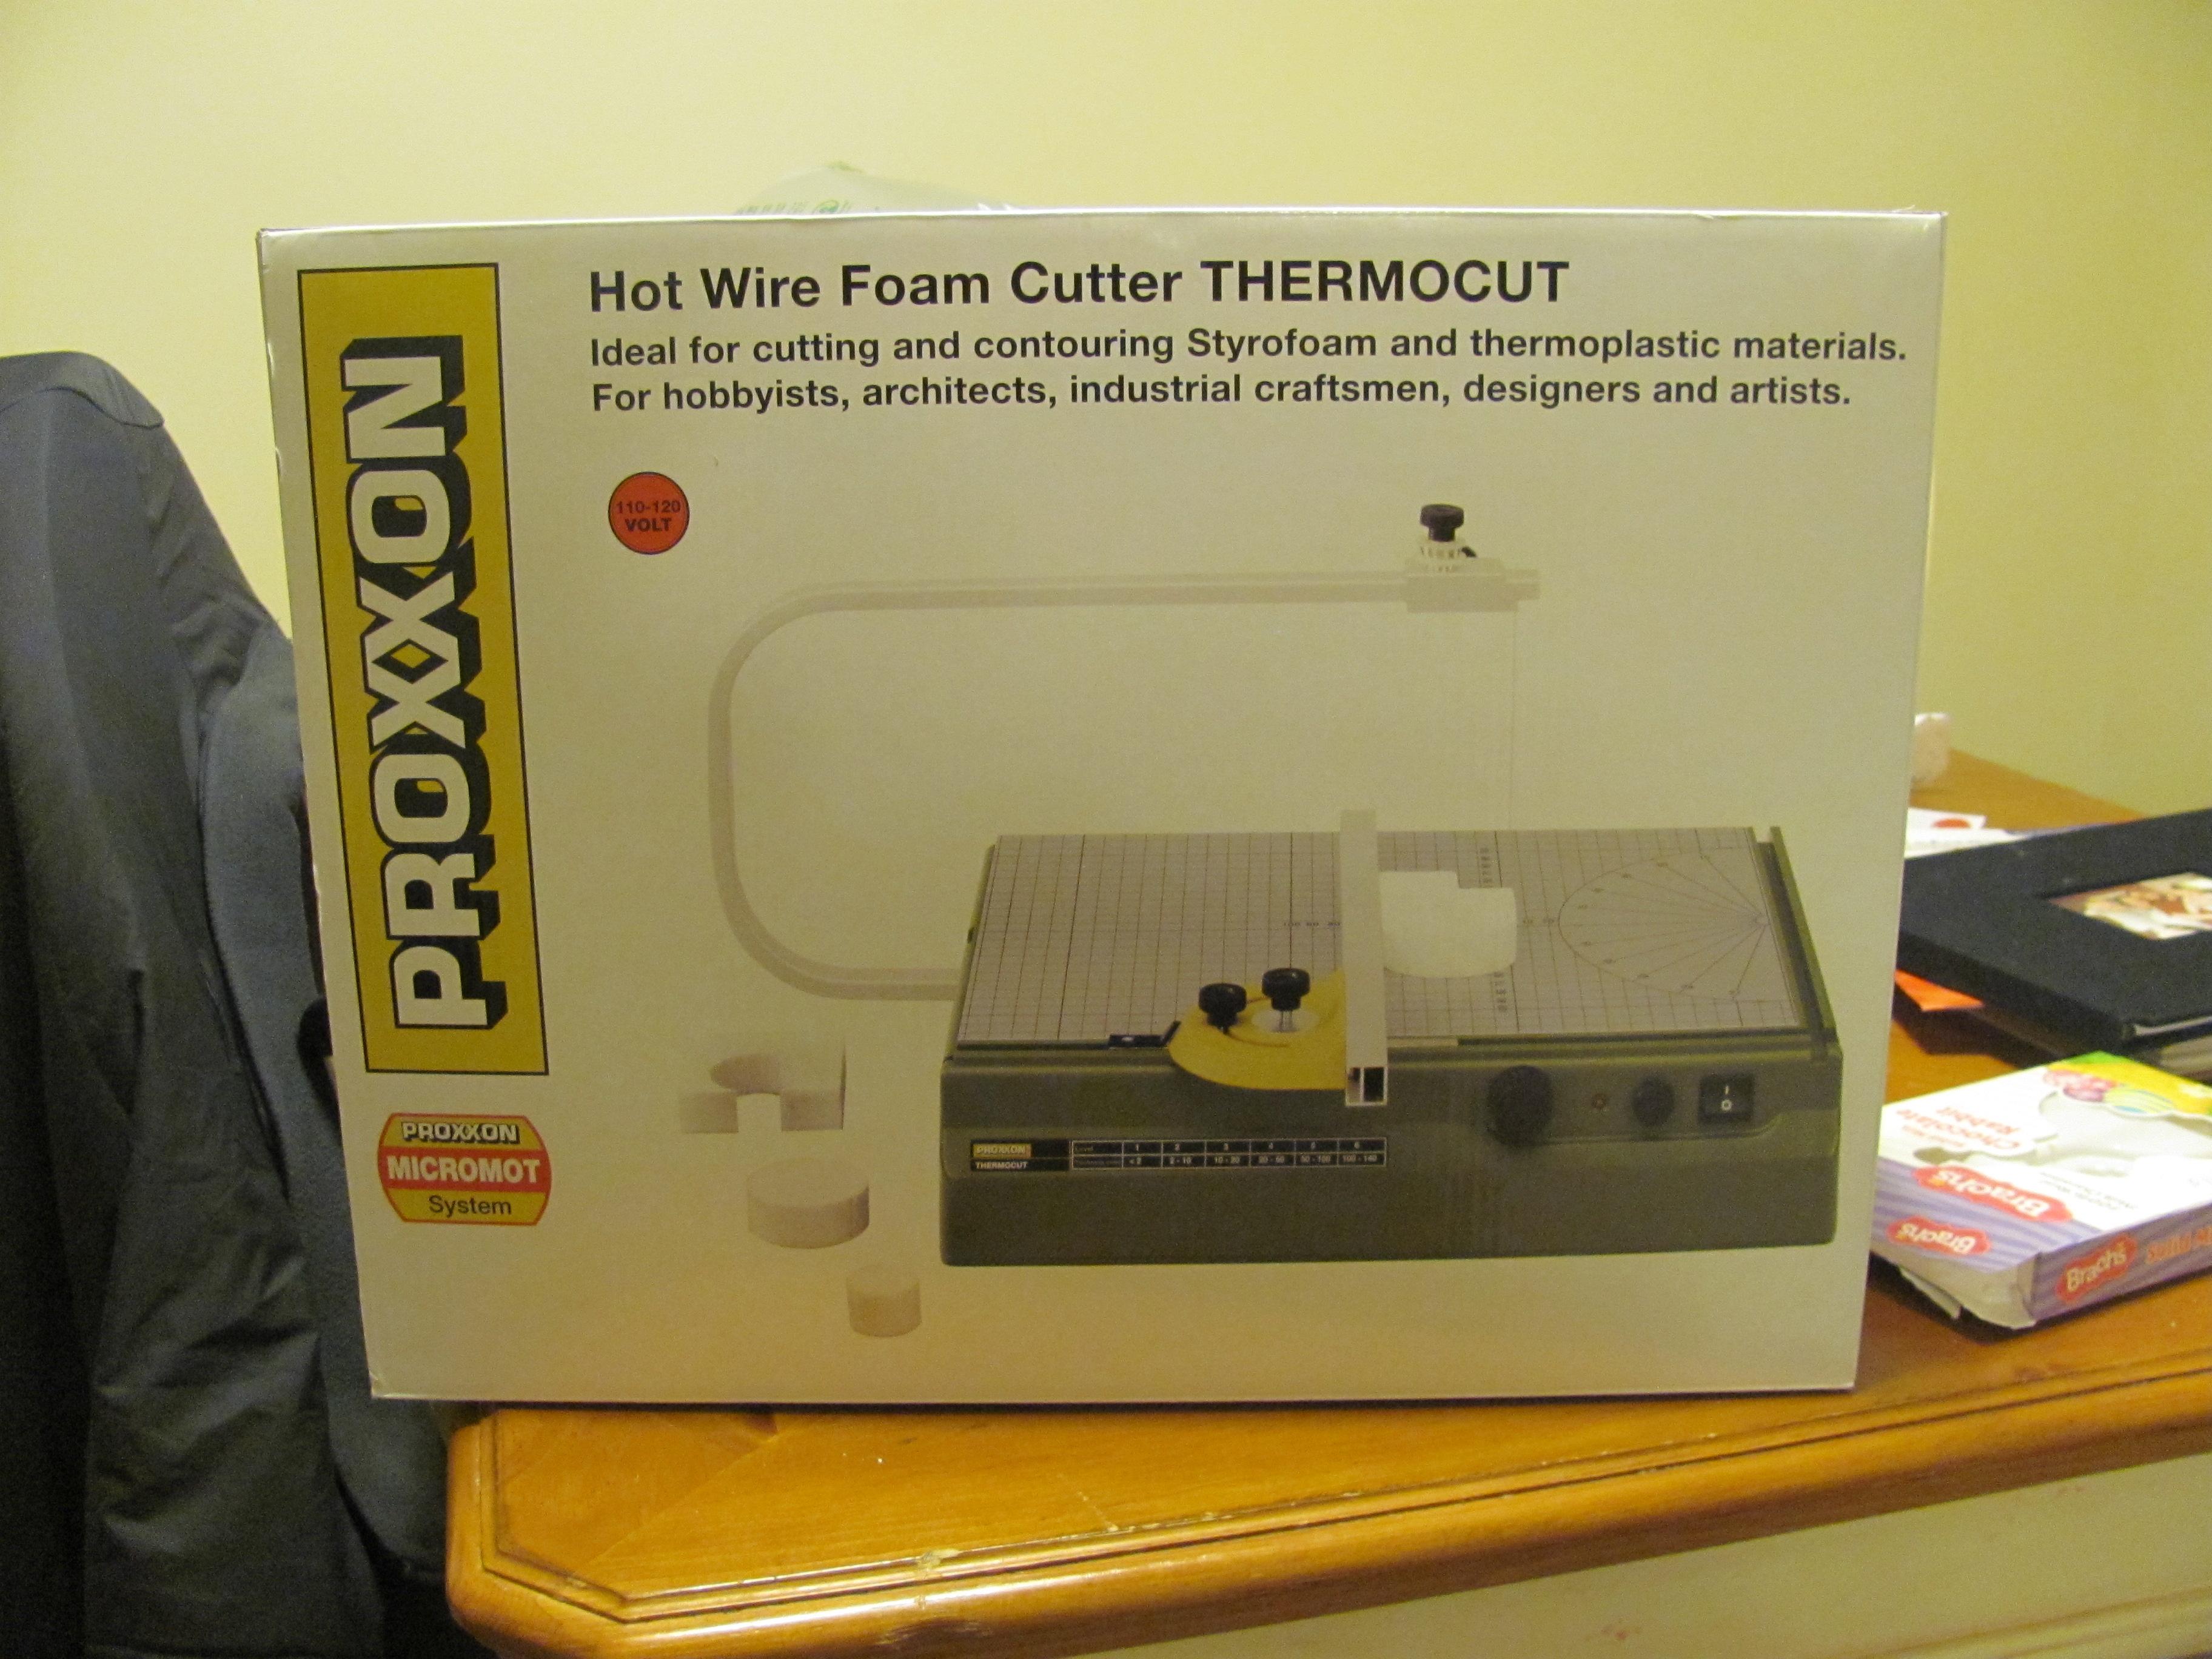 Foam Cutter, Proxxon Hot Wire Foam Cutter Thermocut - Proxxon Hot